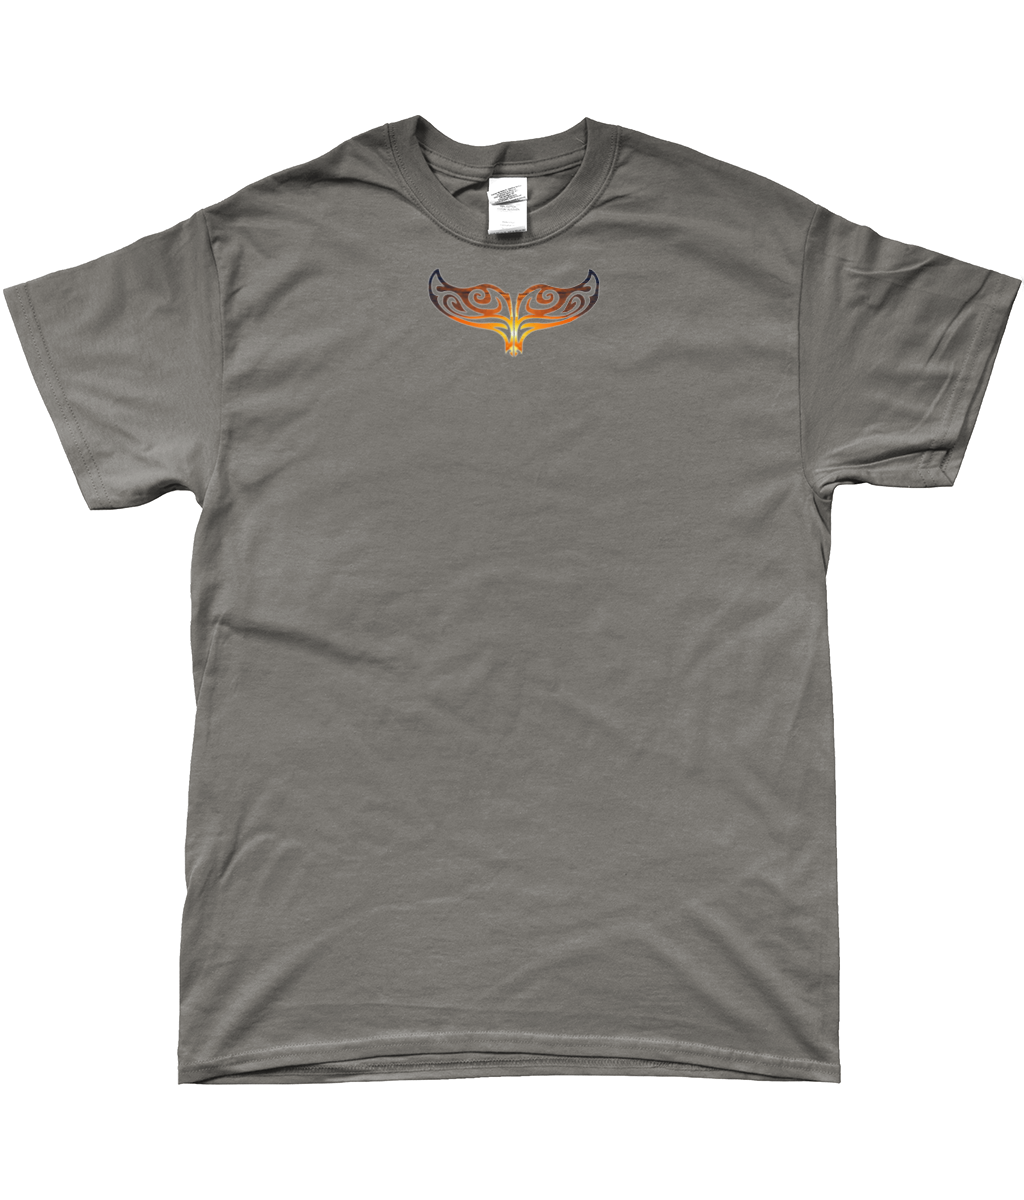 Sunset WhaleTail t-shirt